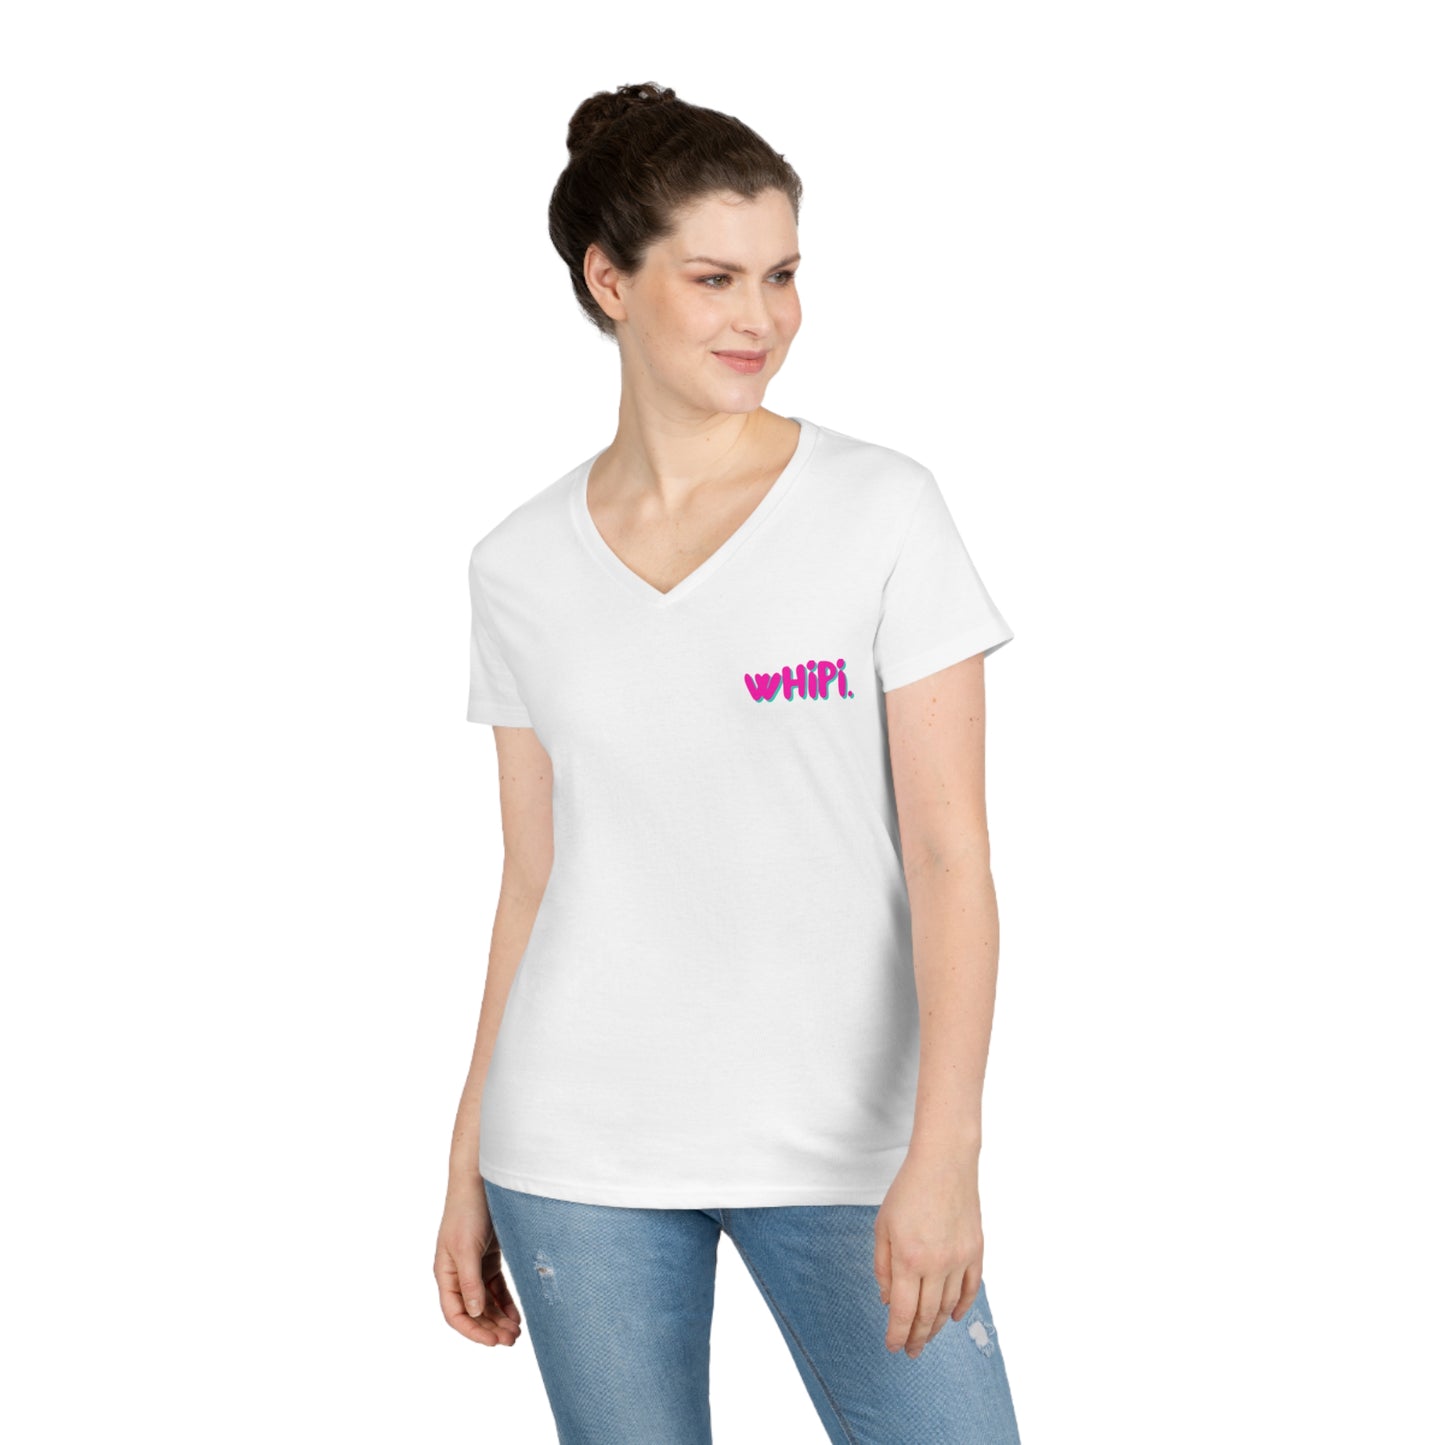 wHiPi. Small logo V-Neck T-Shirt